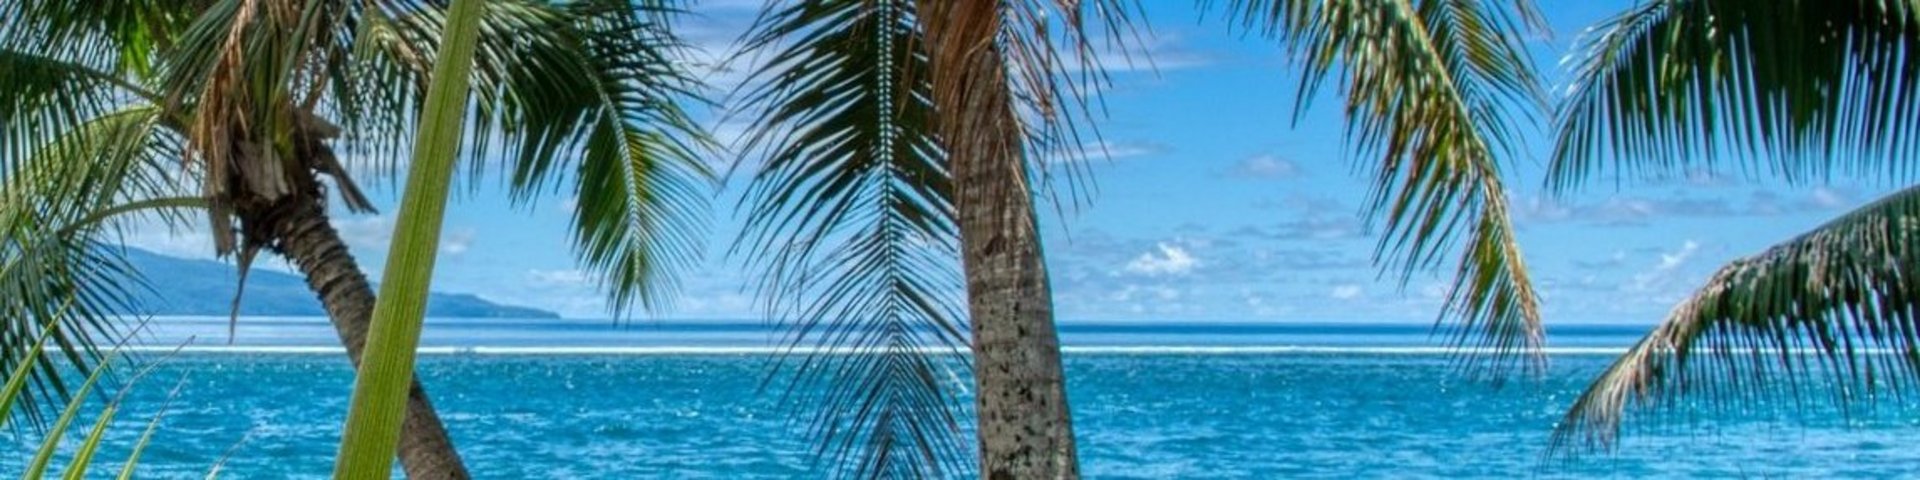 Strand und Palmen in der Südsee